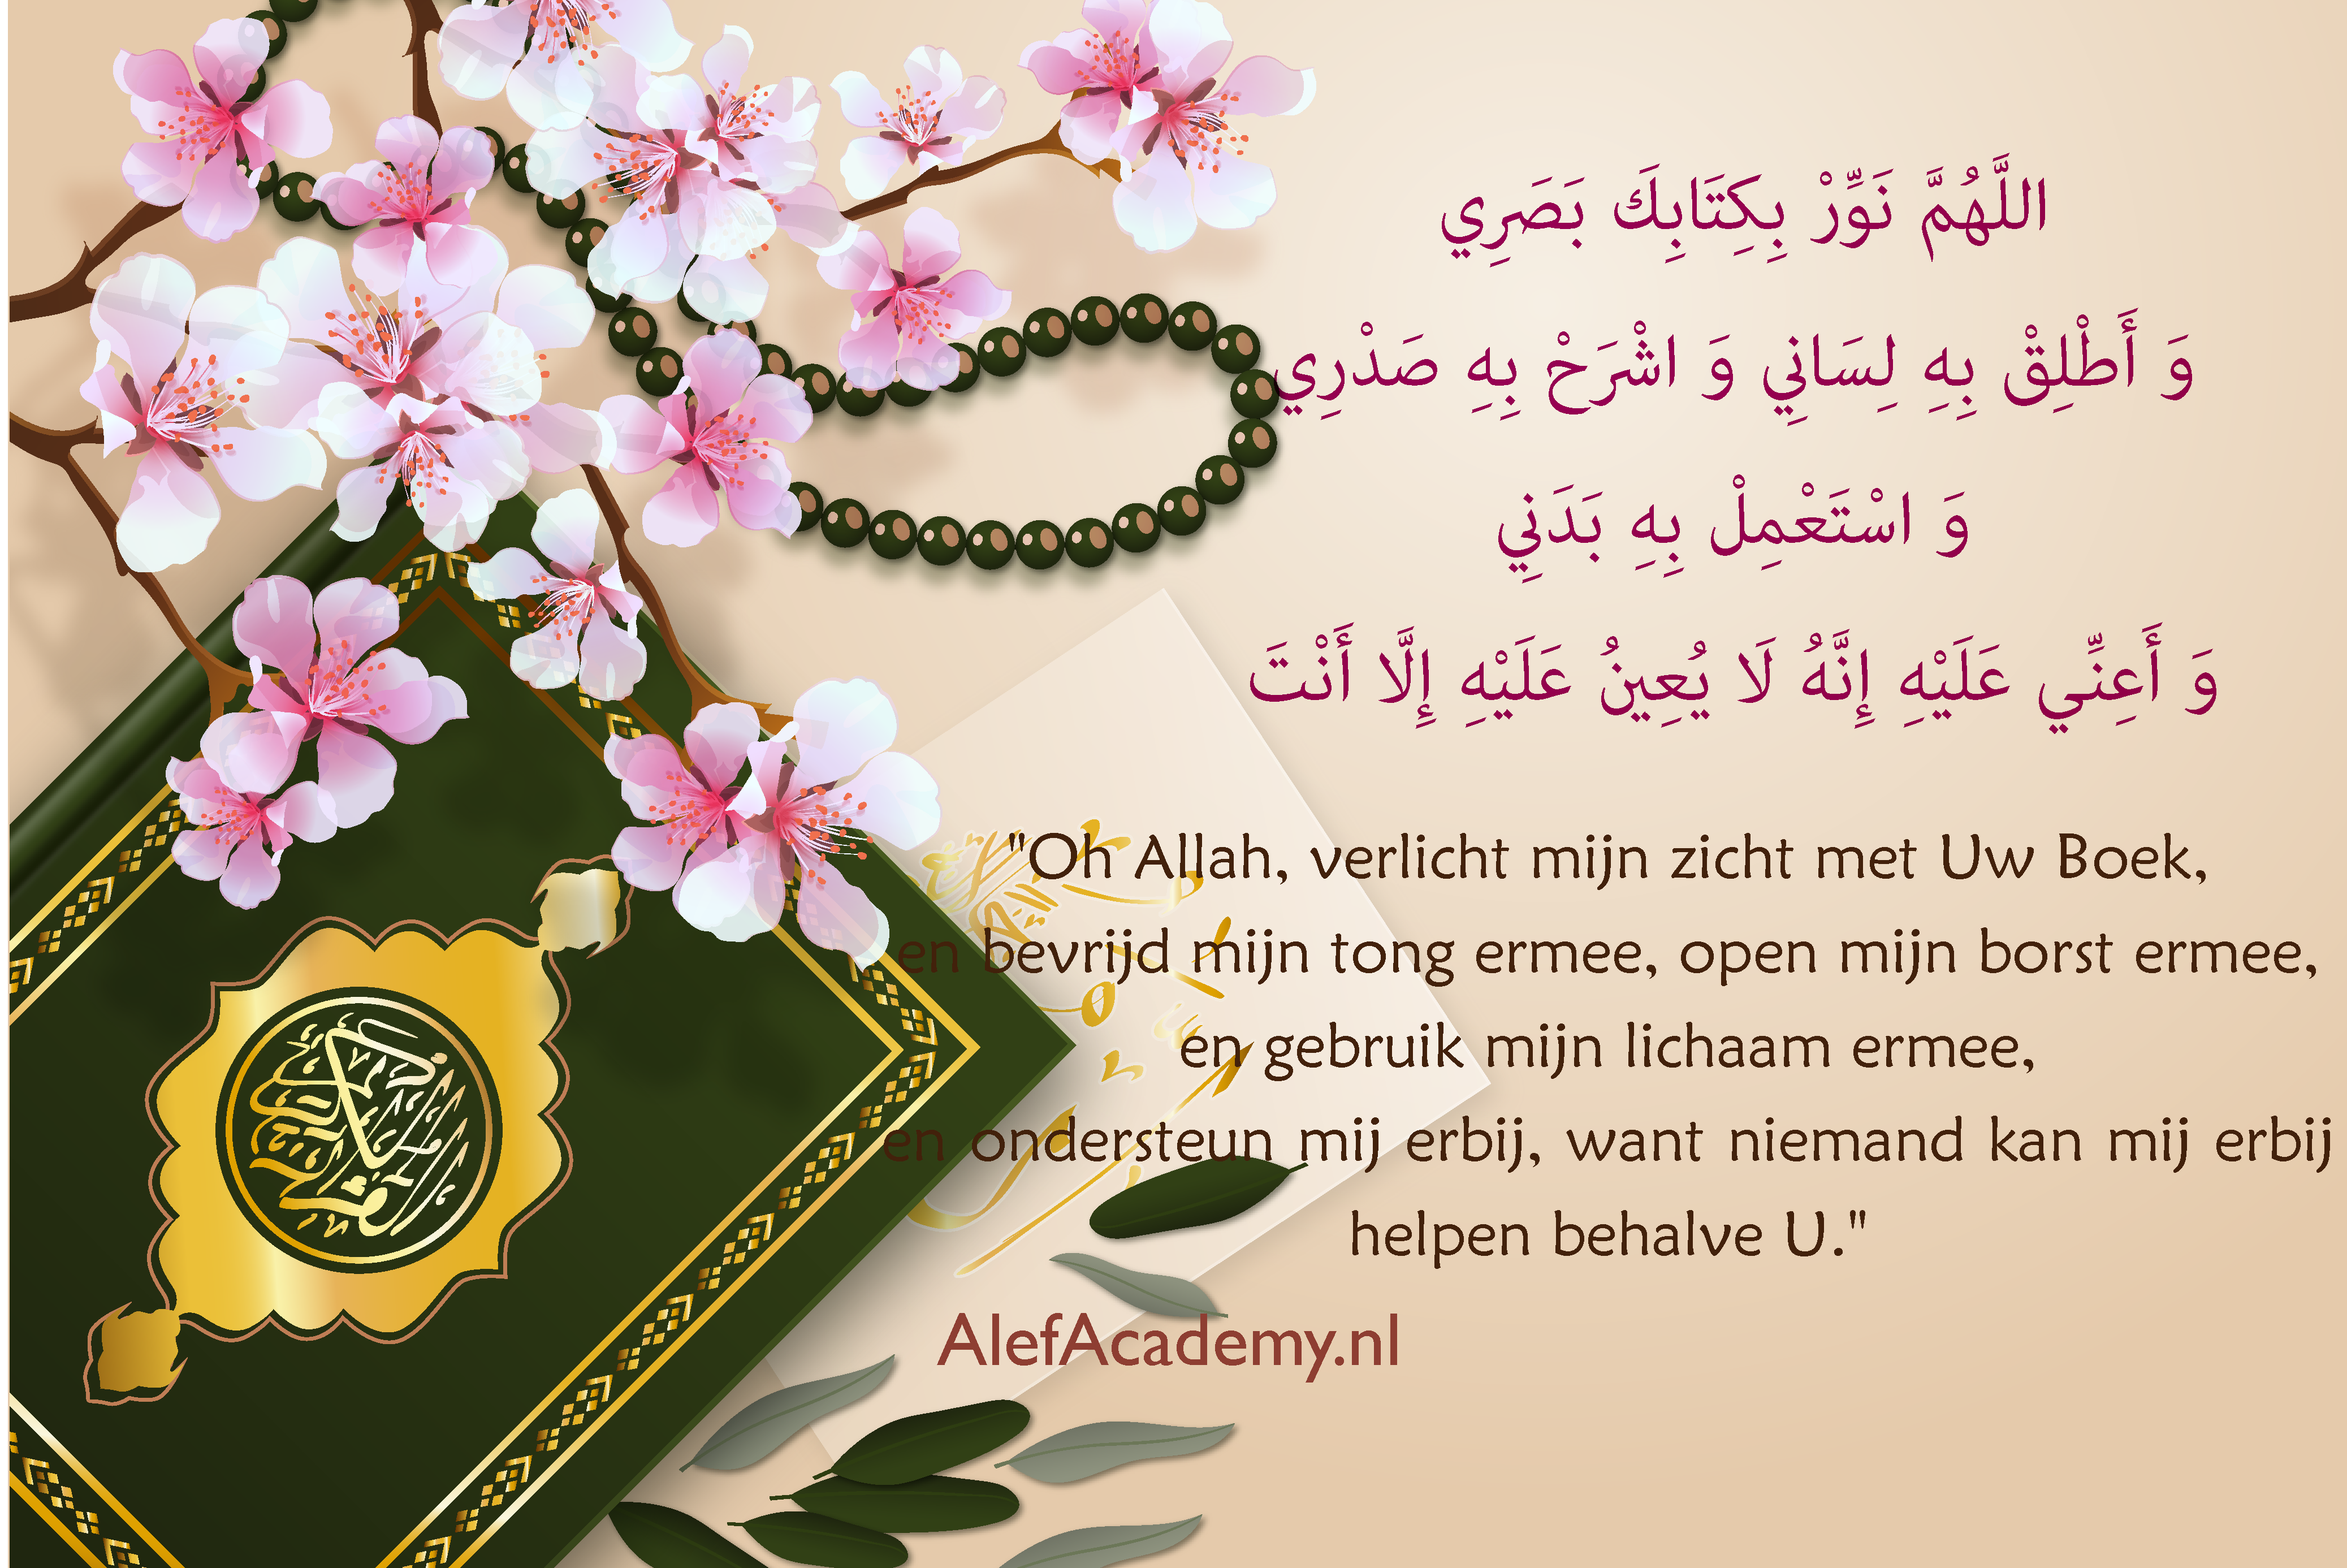 "Doaa aan Allah voor verlichting, leiding en hulp bij het lezen en begrijpen van Zijn Boek, de Koran."